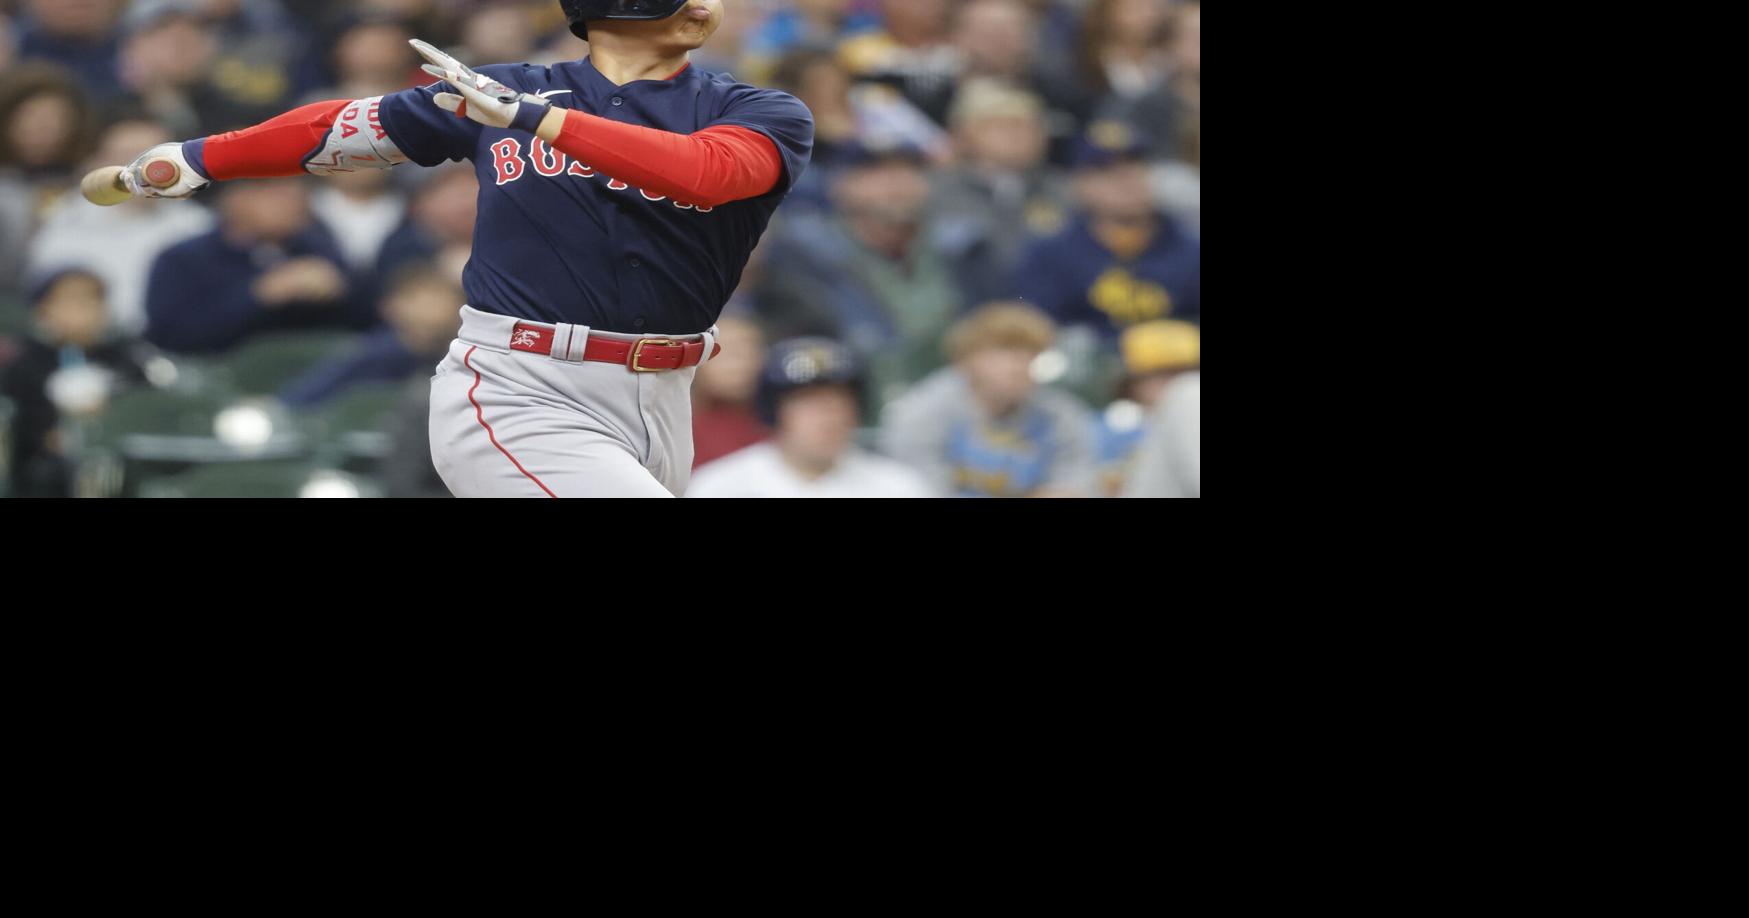 WATCH: Boston Red Sox' Jarren Duran Hits Grand Slam vs. Baltimore